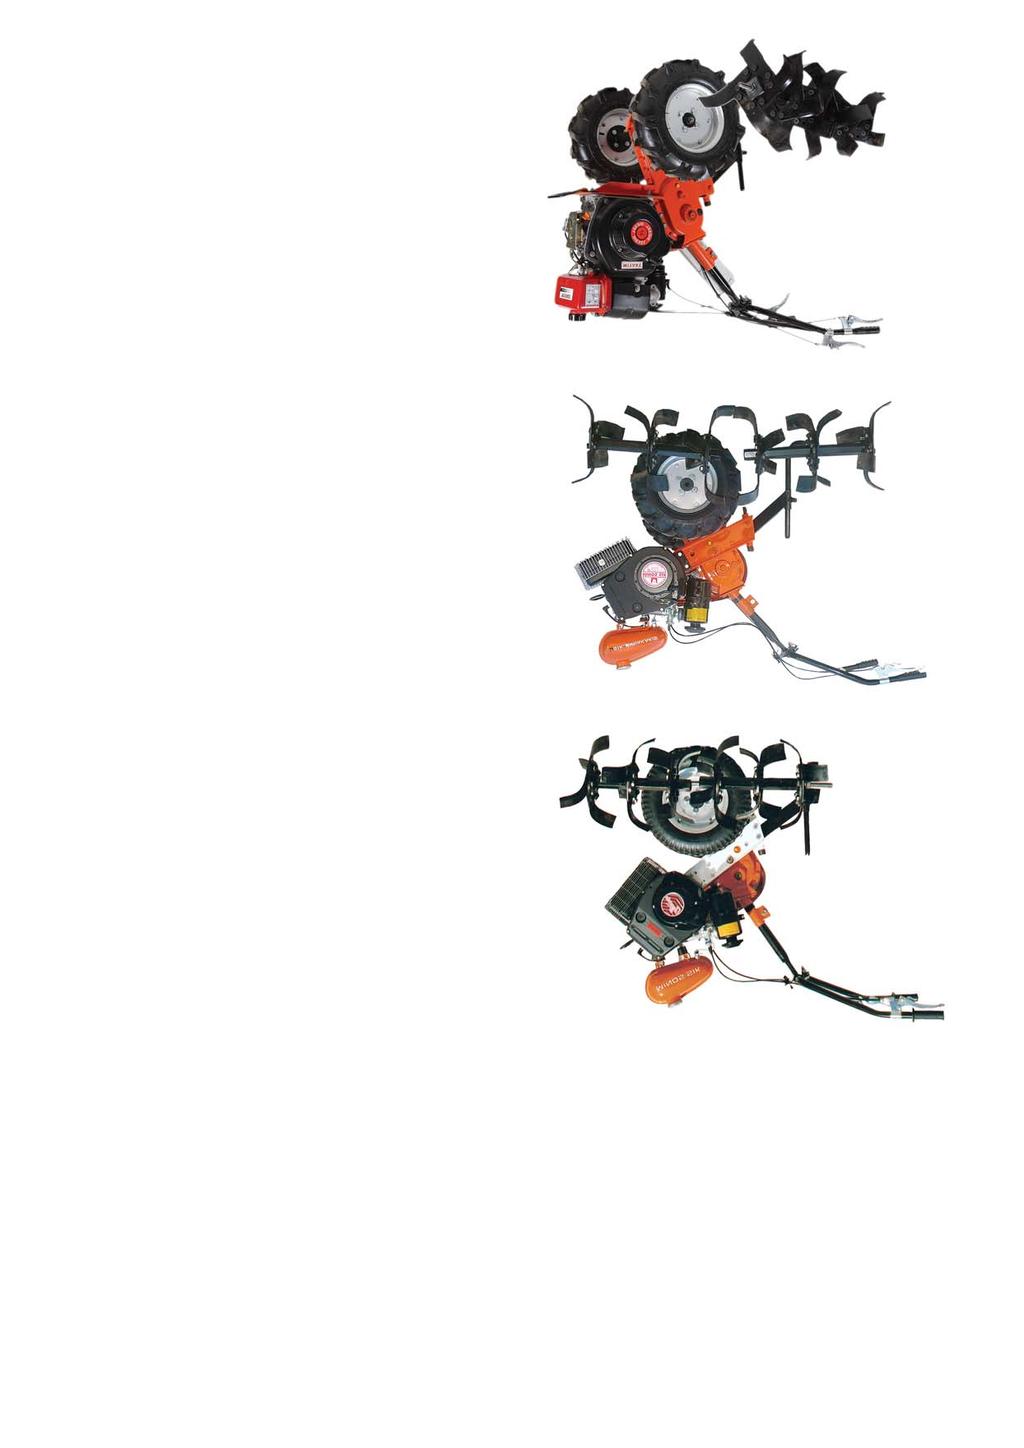 Σκαπτικά Σκαπτικά μηχανήματα Σκαπτικά με δίχρονο κινητήρα Κατασκευάζουμε οκτώ διαφορετικούς τύπους σκαπτικών μηχανημάτων με δίχρονο ή τετράχρονο κινητήρα που μπορούν να καλύψουν τις απαιτήσεις τόσο